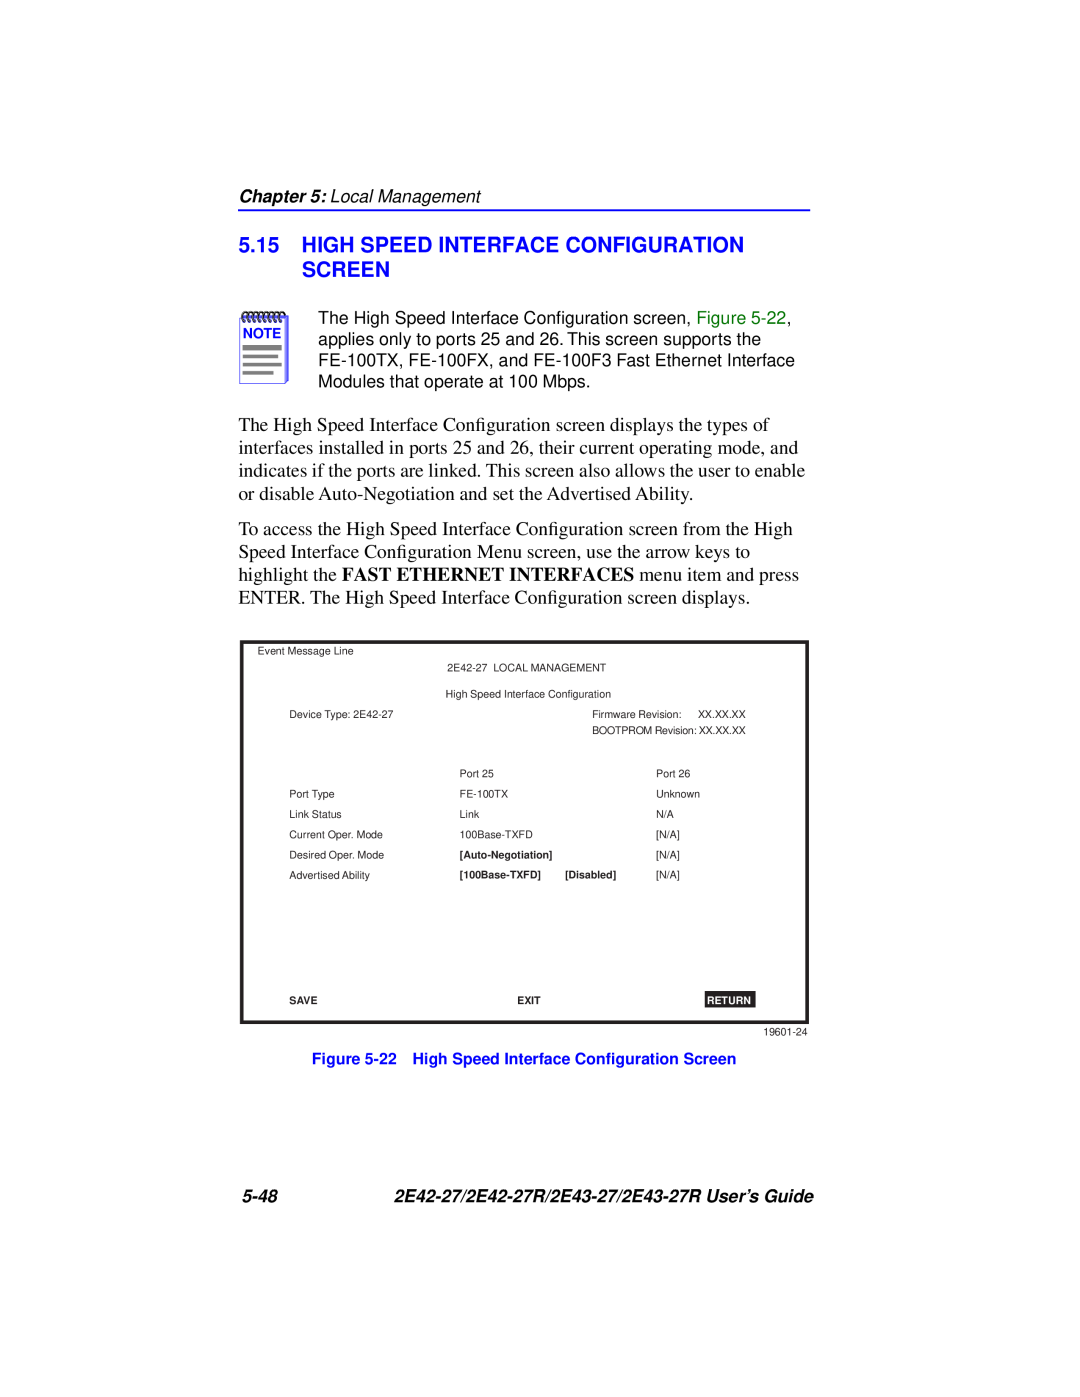 Cabletron Systems 2E43-27, 2E42-27 High Speed Interface Configuration Screen, 22 High Speed Interface Conﬁguration Screen 